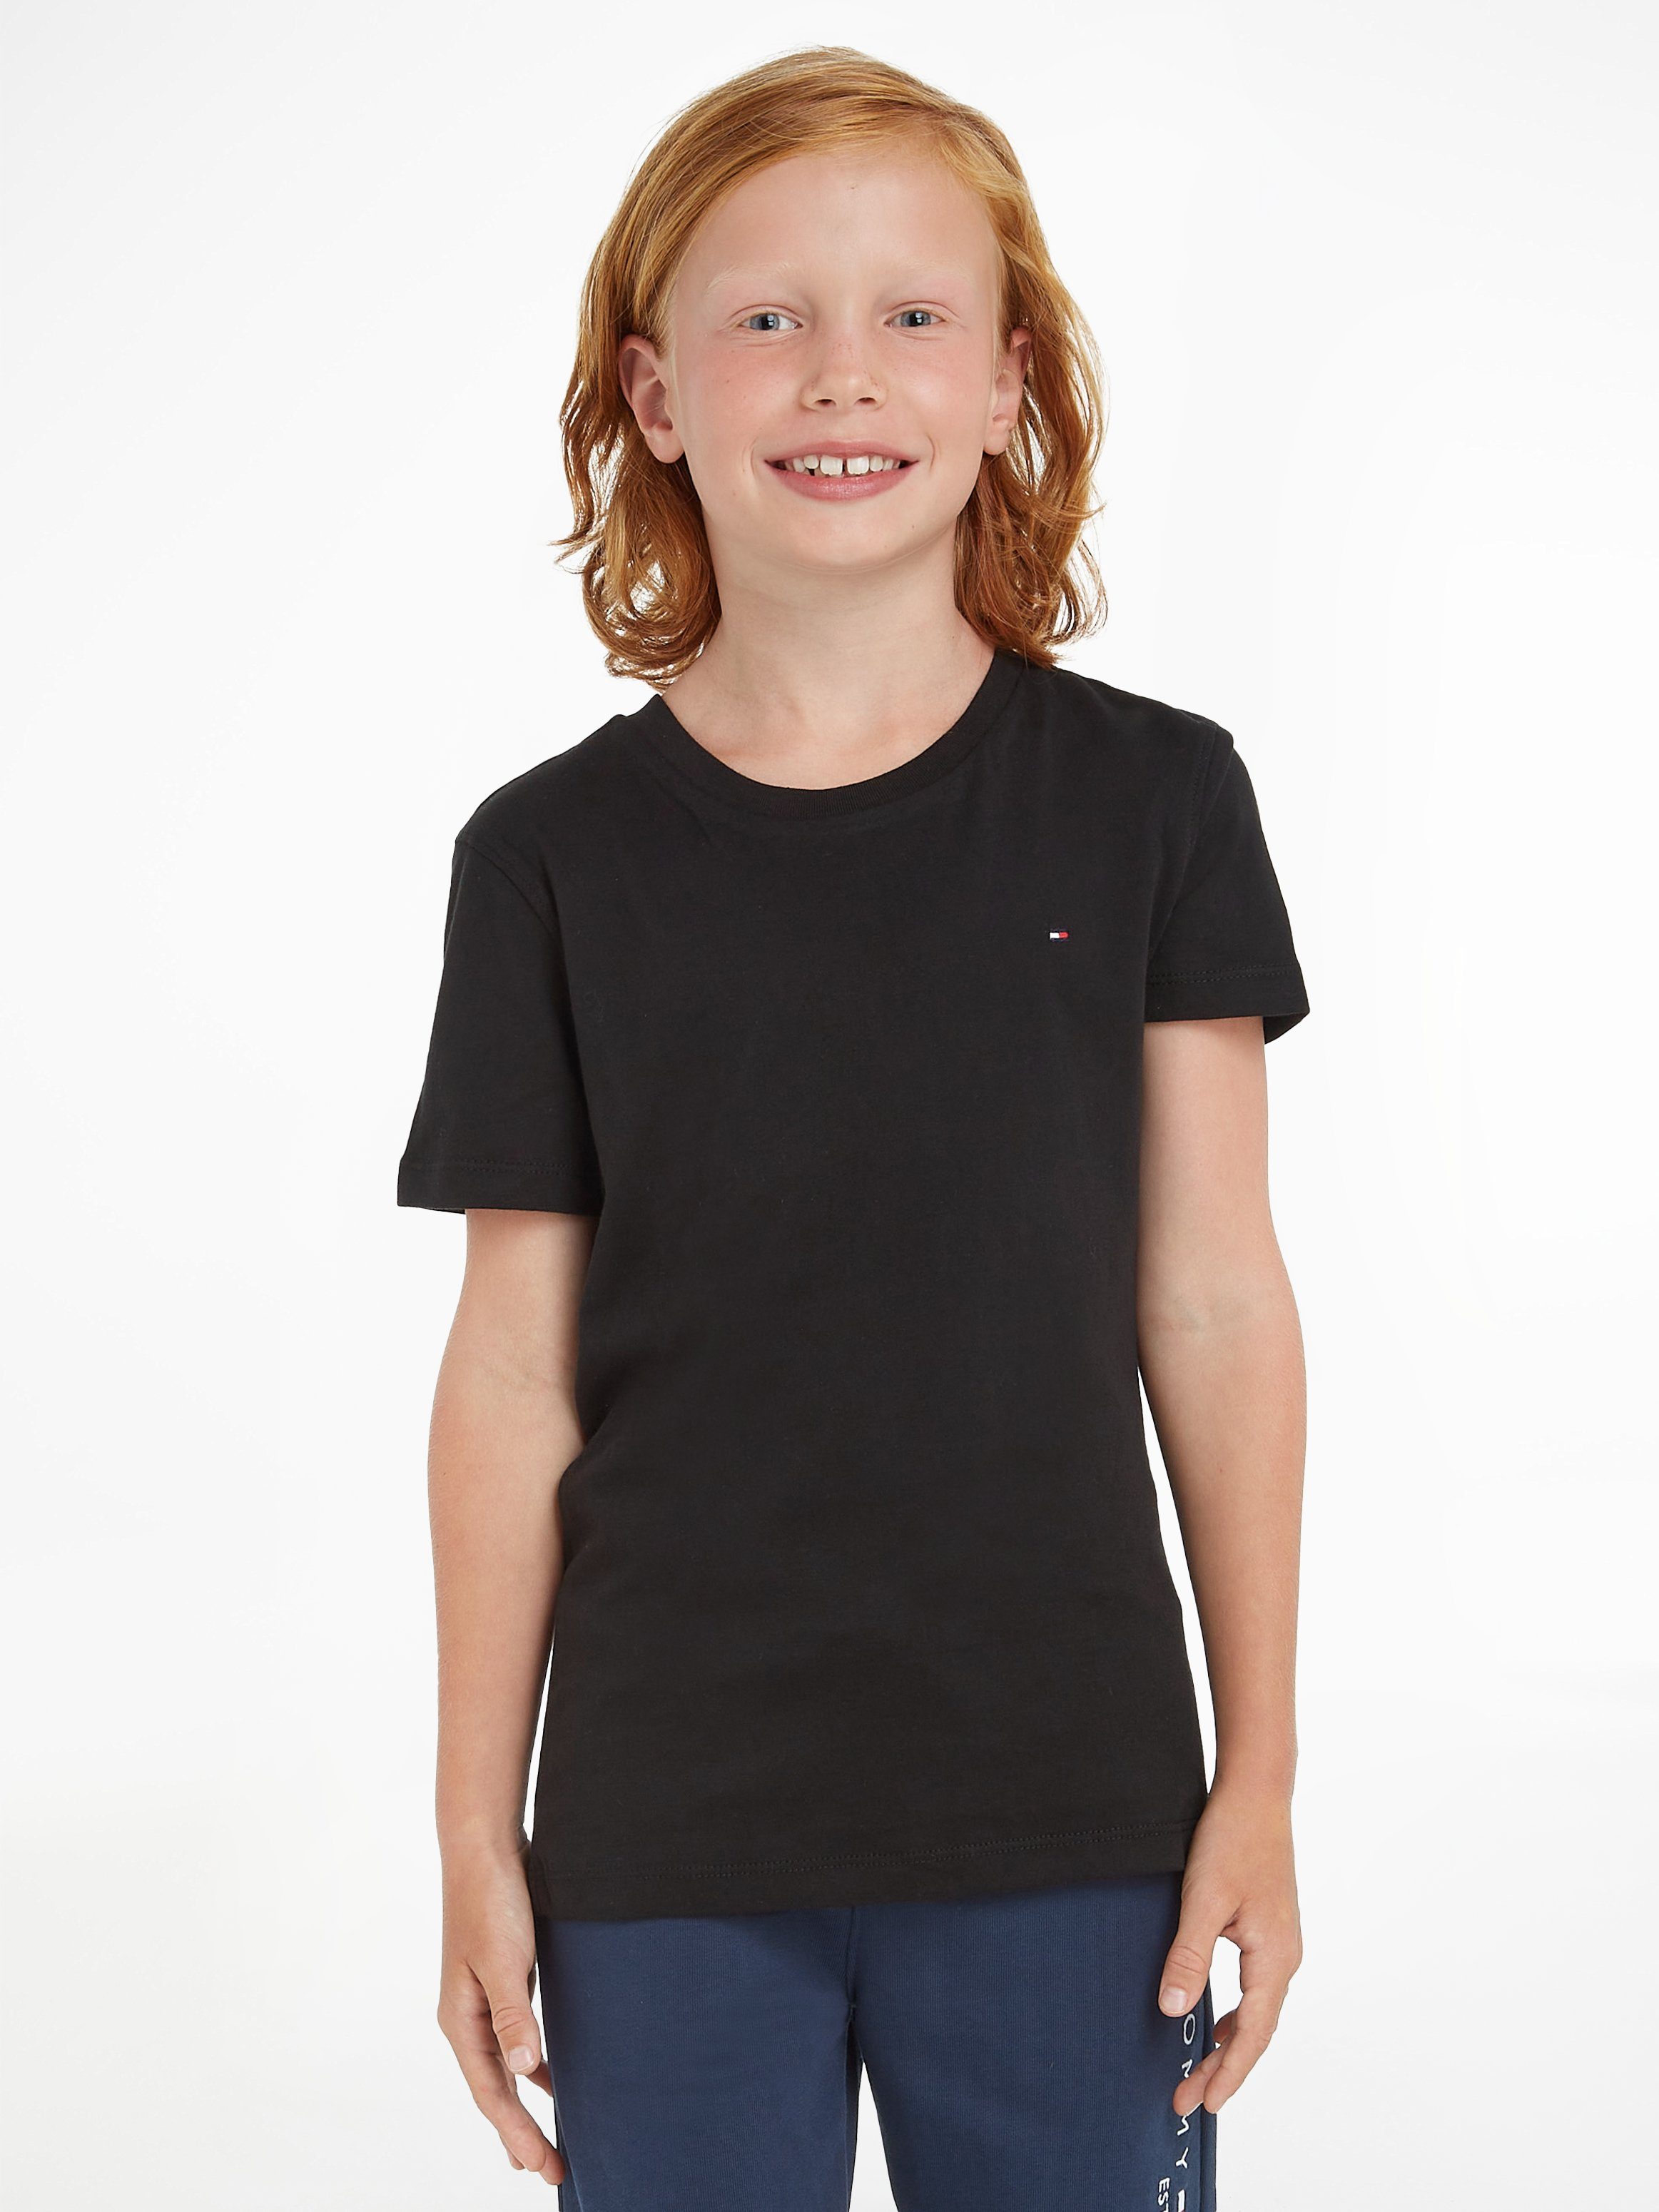 Tommy Hilfiger T-Shirt BOYS BASIC CN KNIT Kinder Kids Junior MiniMe,für  Jungen, Klassisches Shirt mit kleiner Stickerei auf der Brust